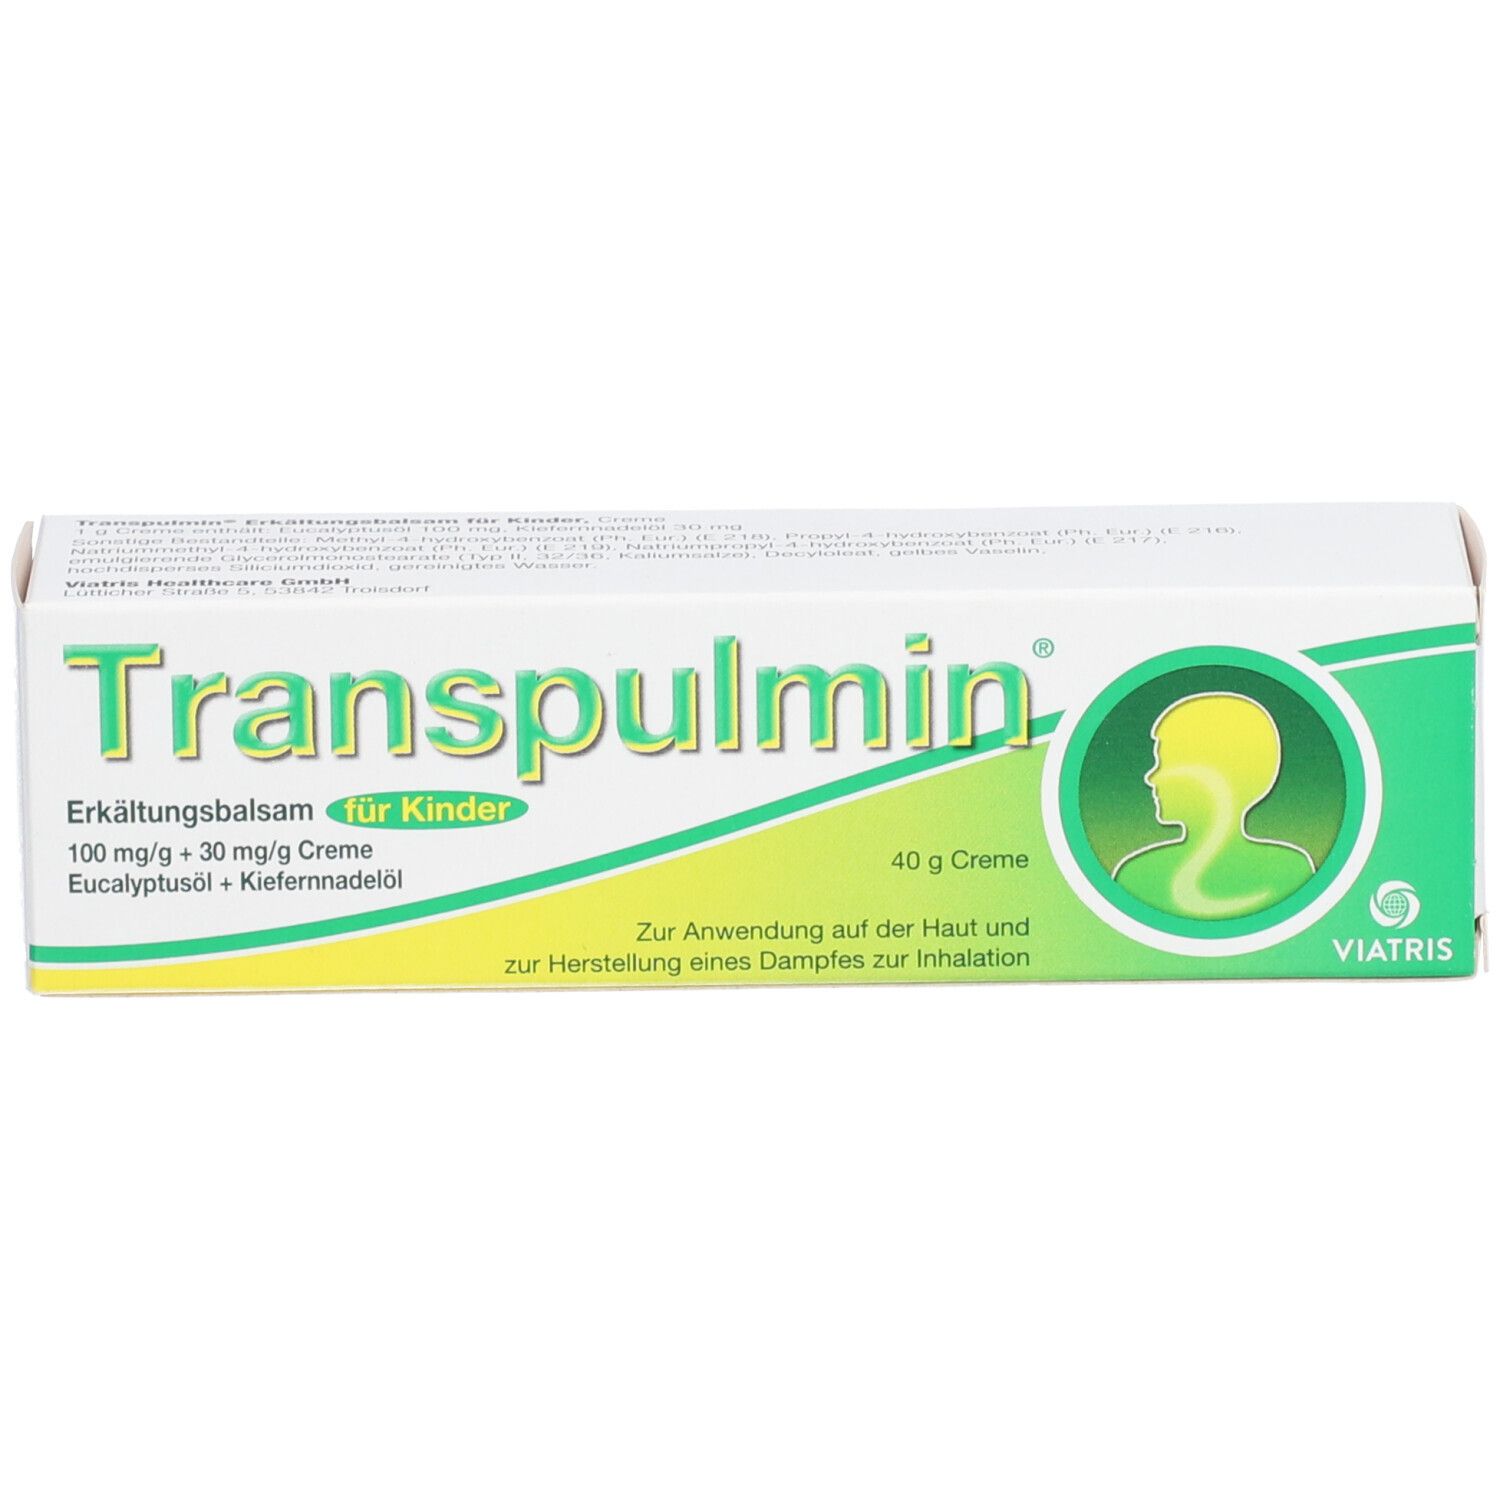 Transpulmin Erkältungsbalsam für Kinder: Wohltuender Balsam zur Anwendung bei Erkältung, Husten und Schnupfen